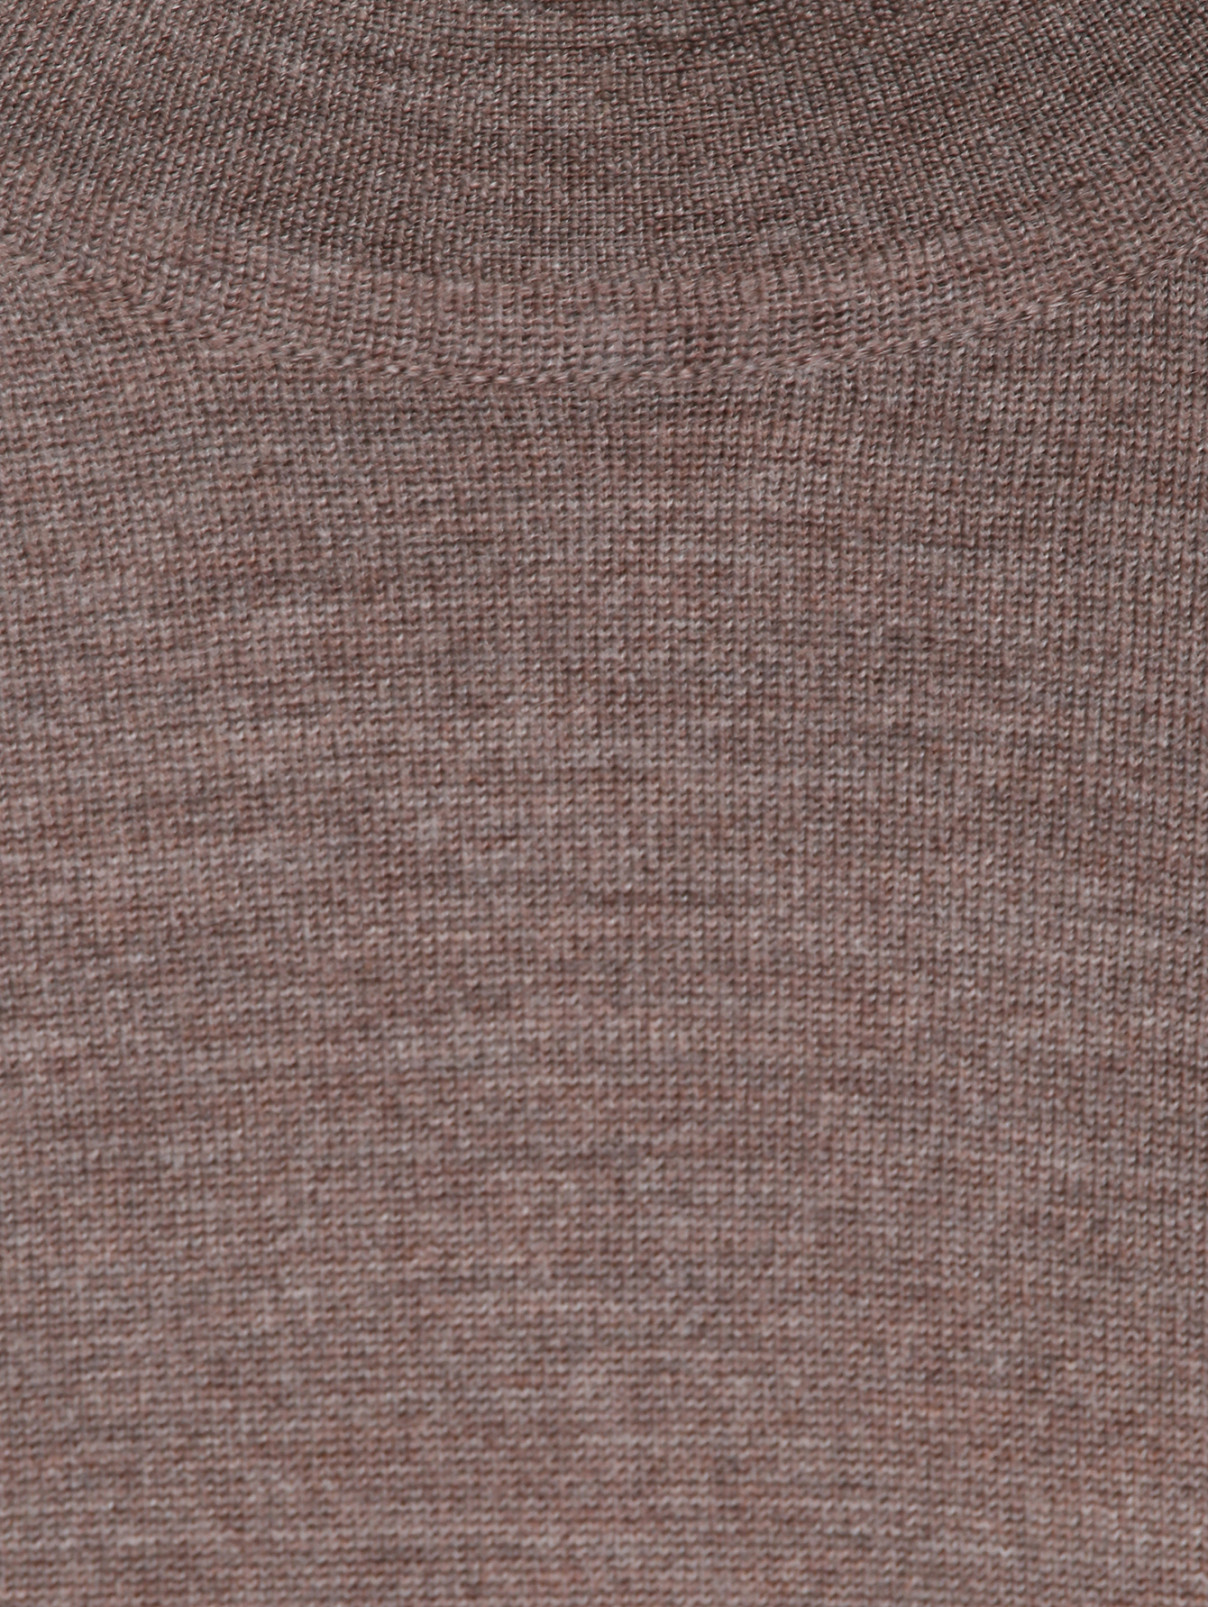 Джемпер из шерсти и шелка с длинными рукавами Bertolo  –  Деталь  – Цвет:  Коричневый